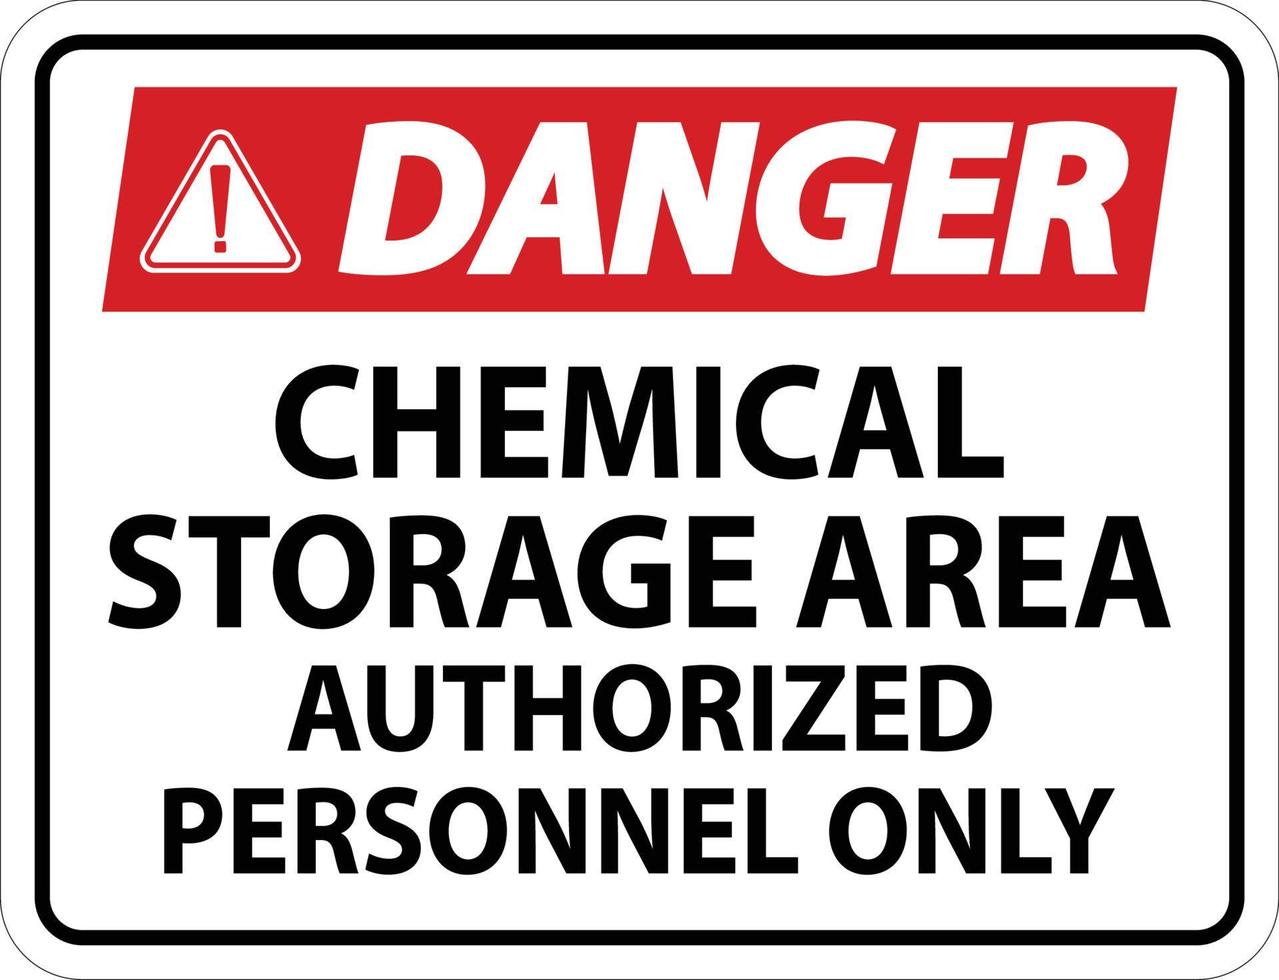 danger zone de stockage de produits chimiques personnel autorisé uniquement symbole signe vecteur